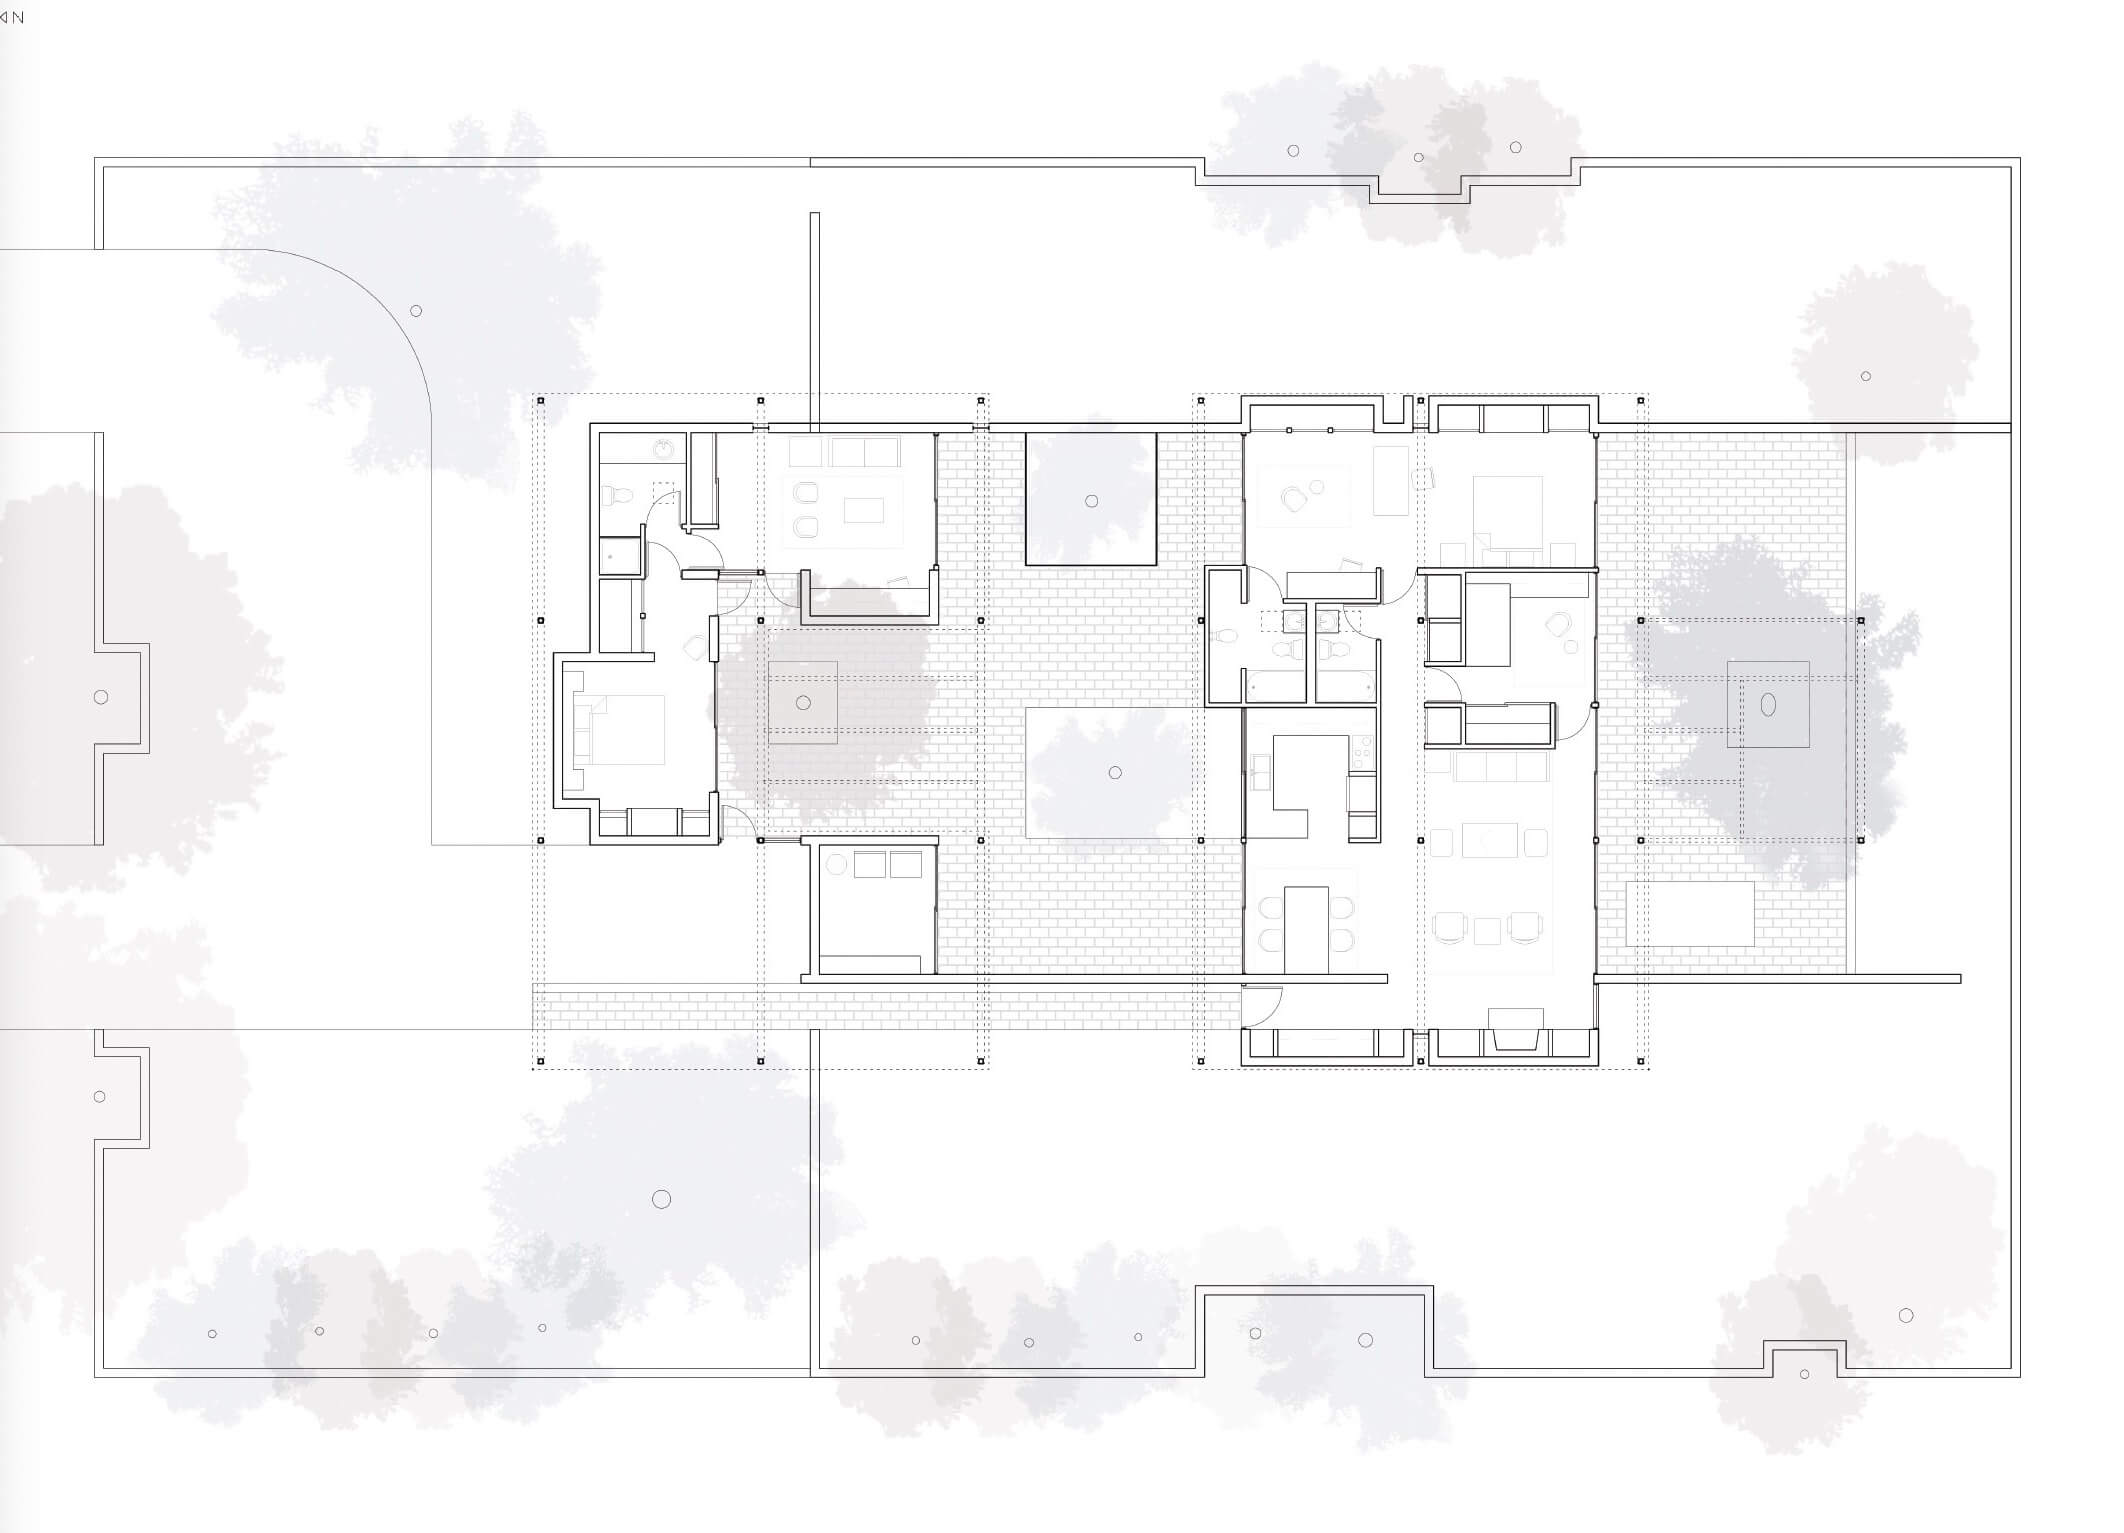 floor plan of a rectangular home